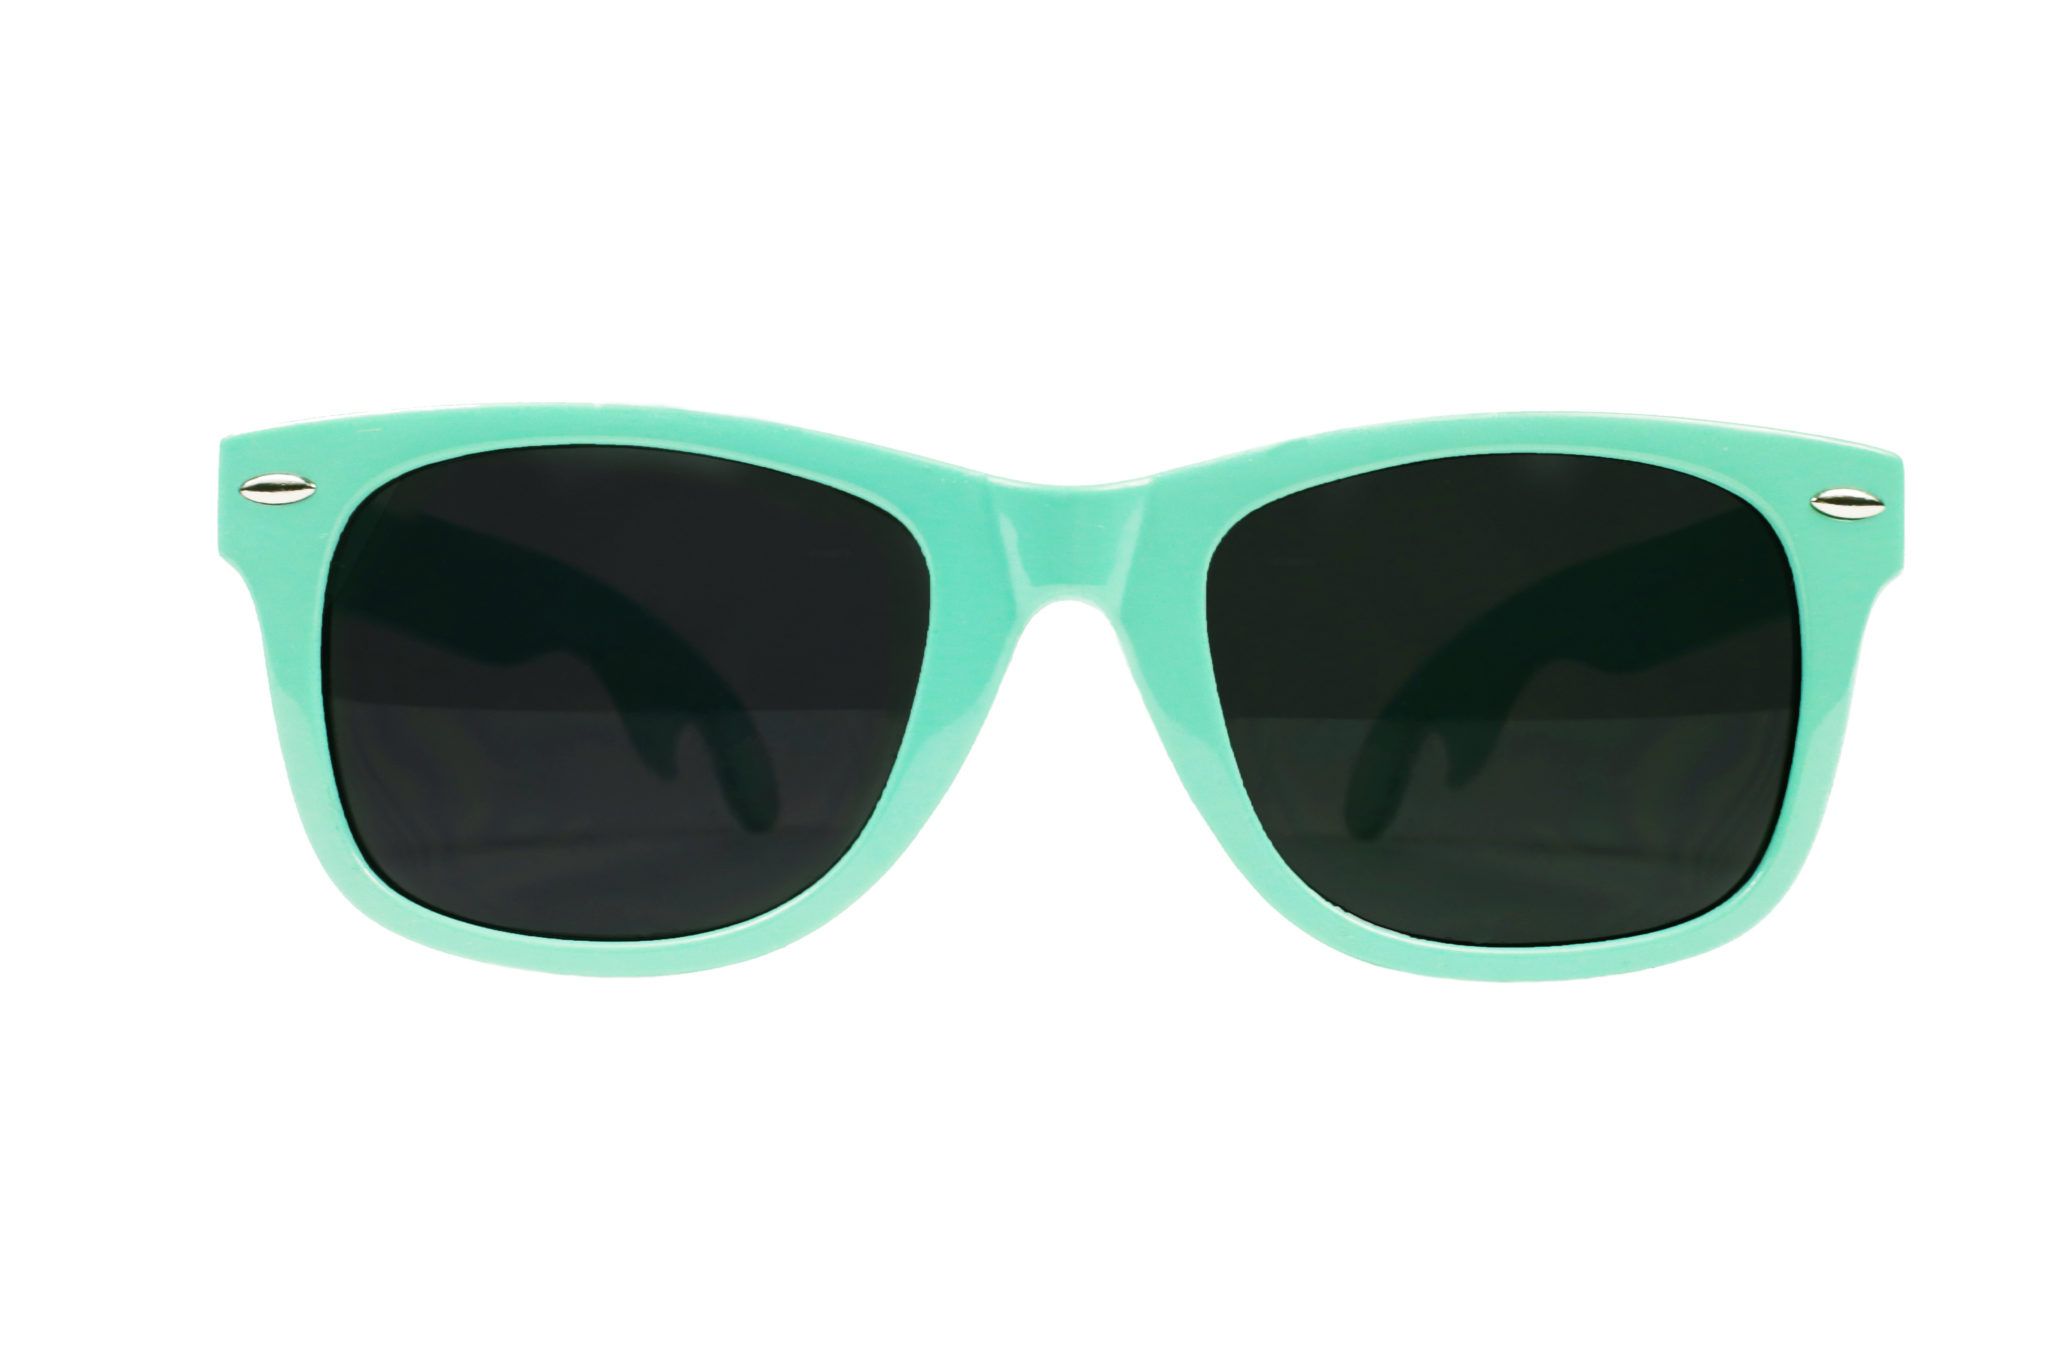 The Beach Buddies - Cheers Sunglasses